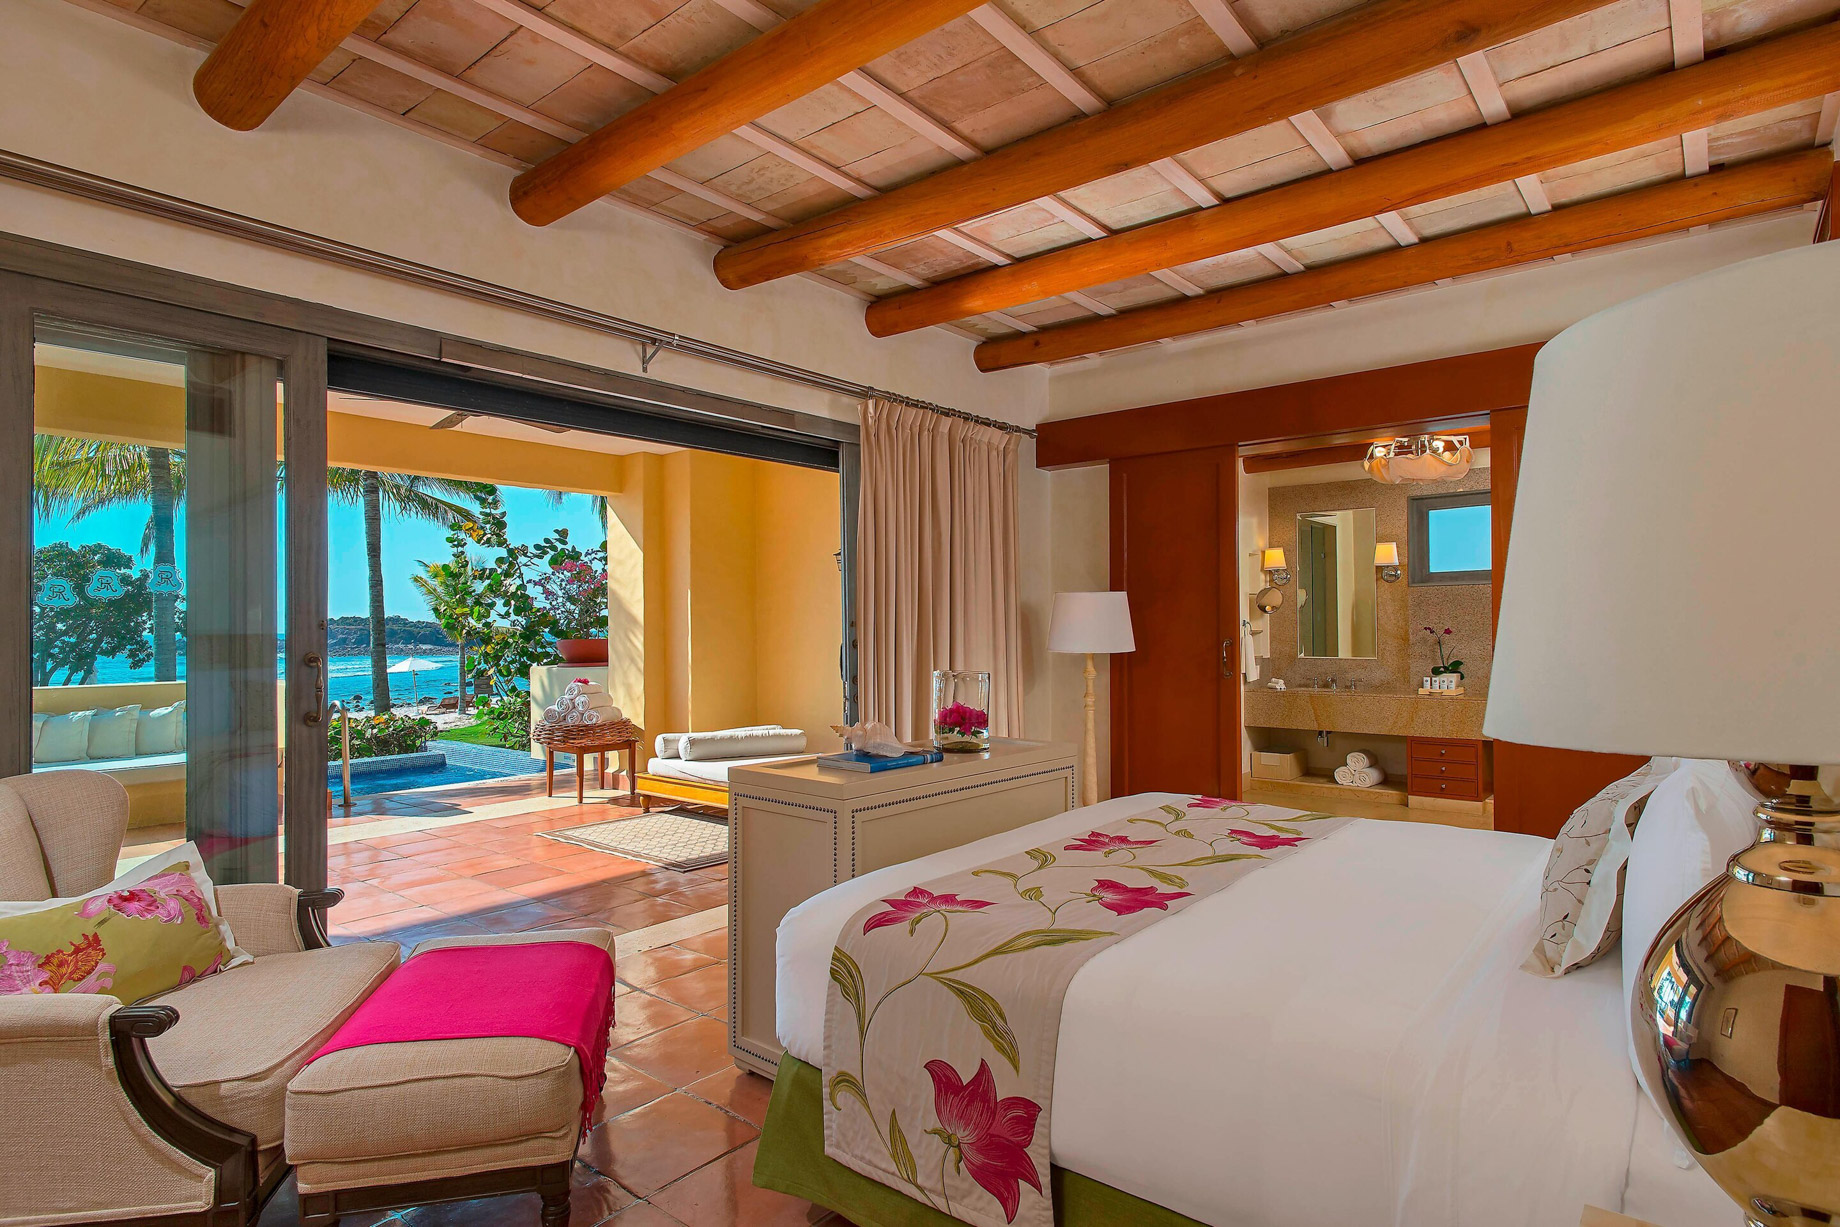 The St. Regis Punta Mita Resort – Nayarit, Mexico – Villa Bedroom